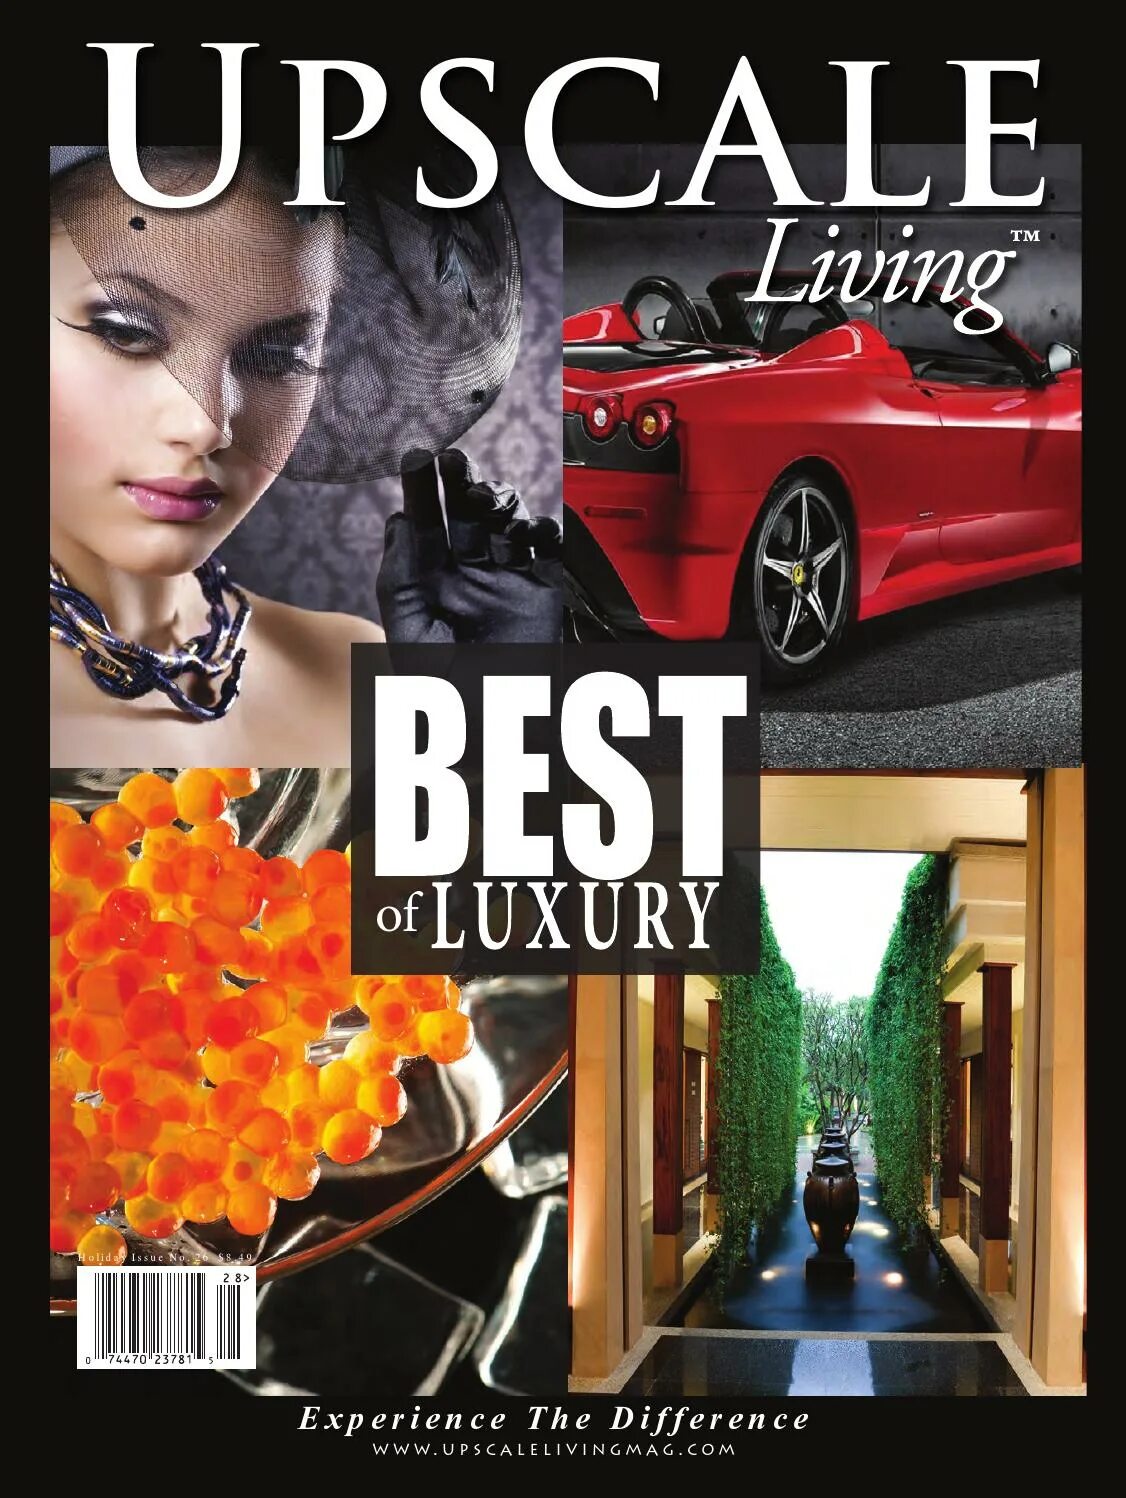 Обложки Luxury Magazine. Luxury Magazine Covers. Upscale. Living magazine